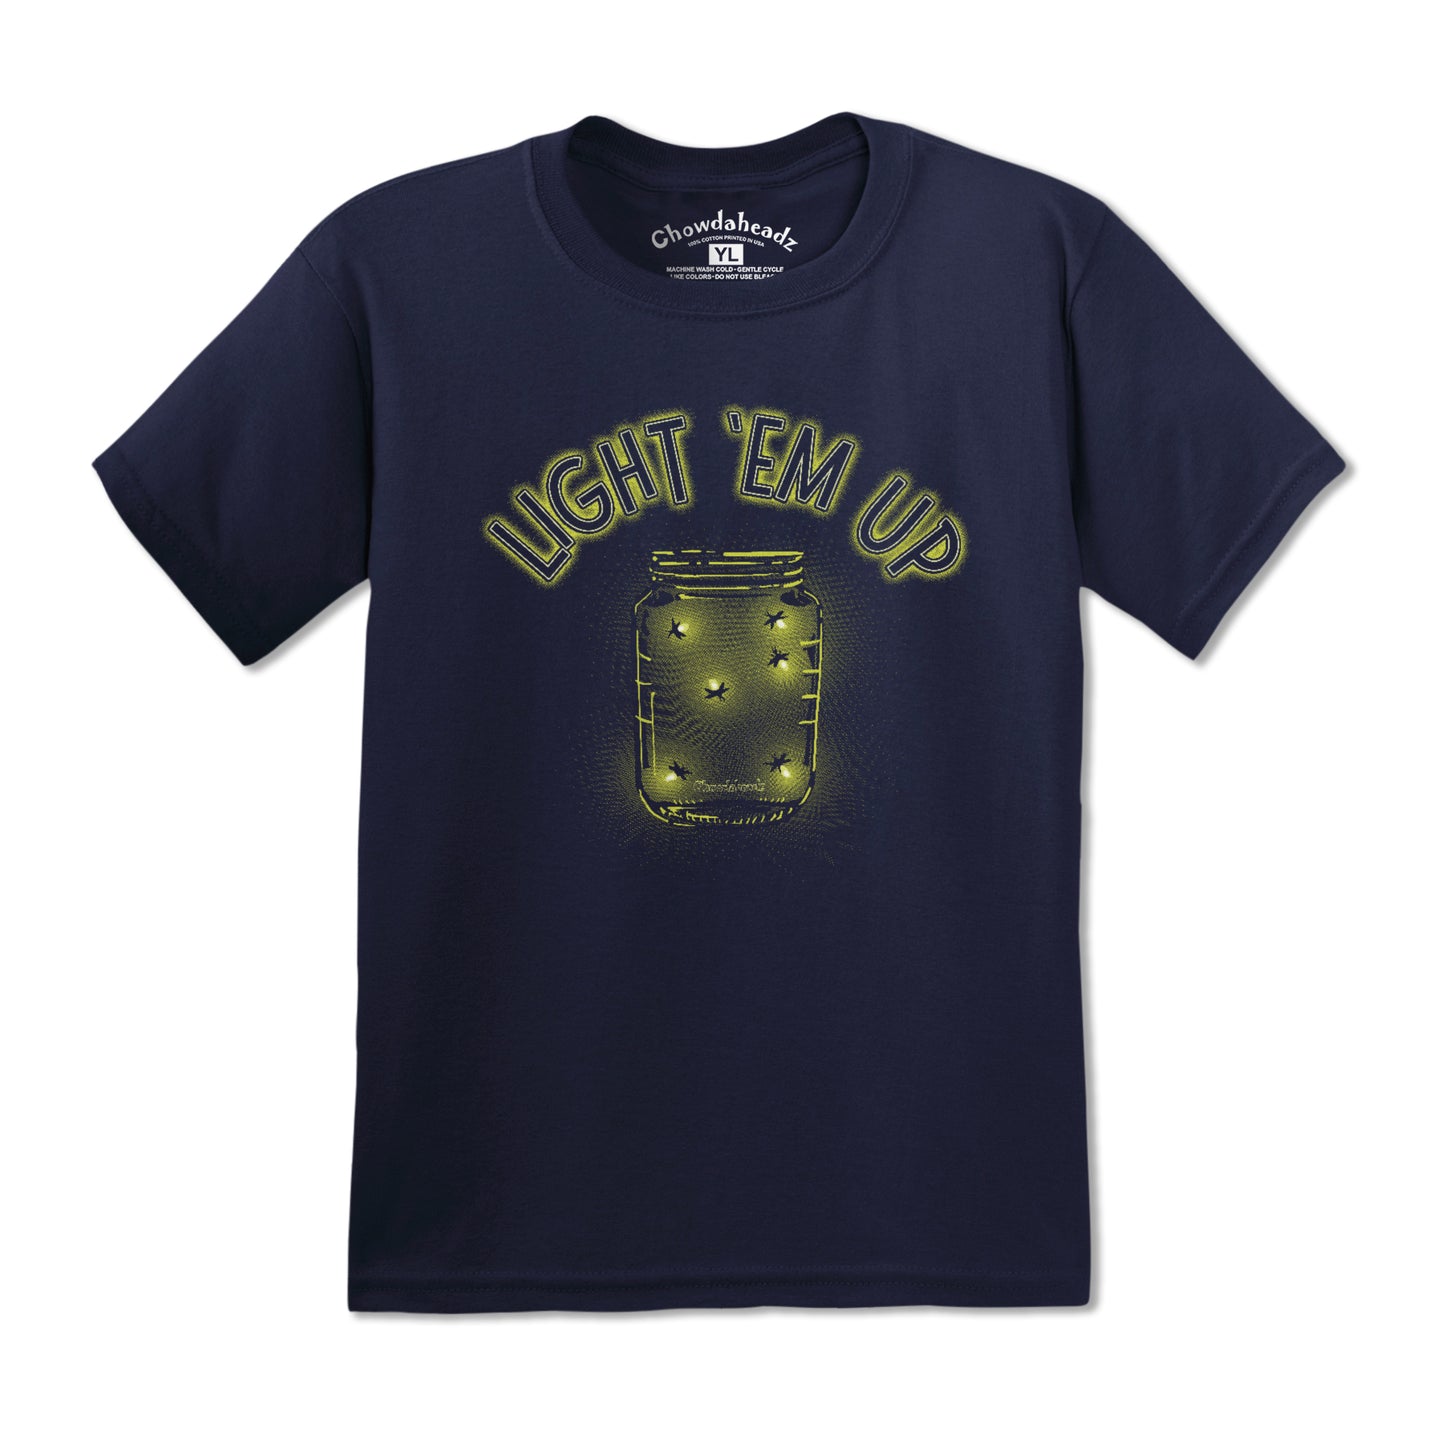 Light 'Em Up - Fireflies Youth T-shirt - Chowdaheadz